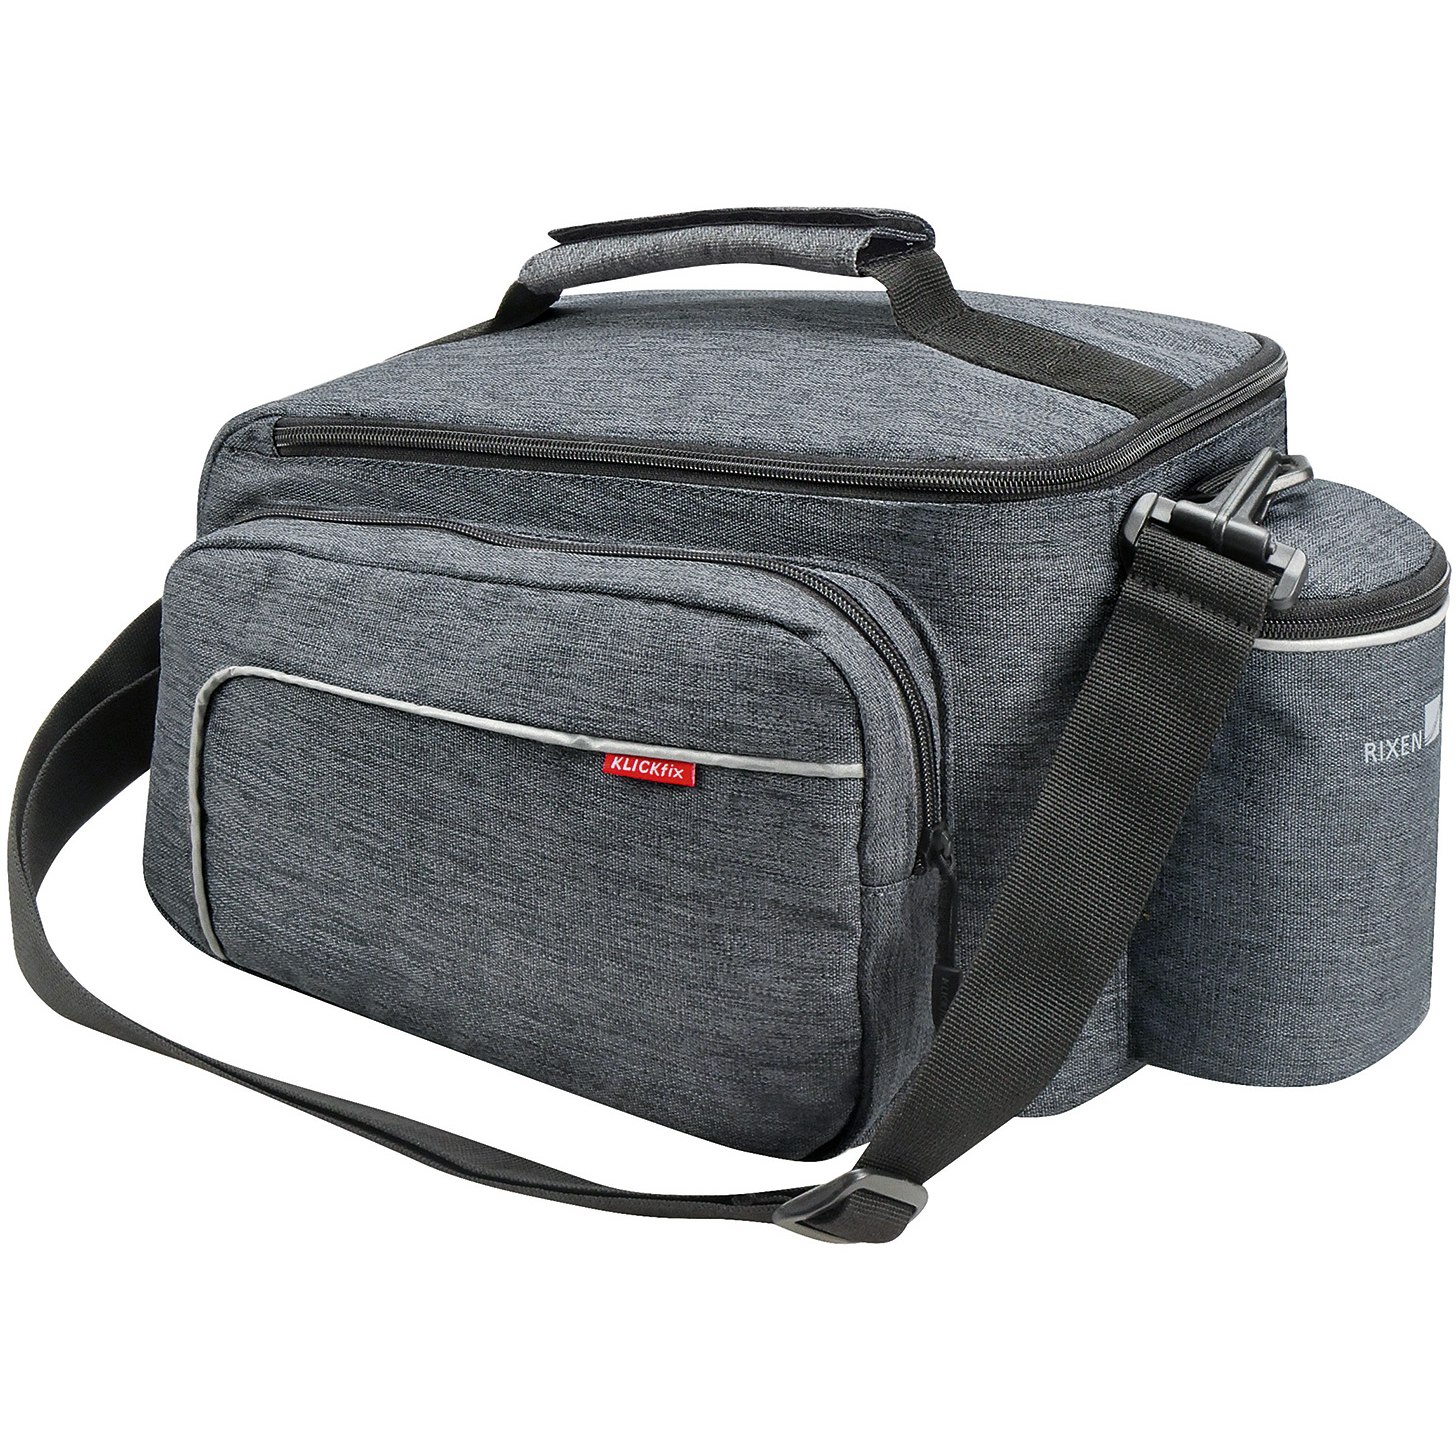 Produktbild von KLICKfix Rackpack Sport Plus Uniklip 2 - Gepäckträgertasche - grau